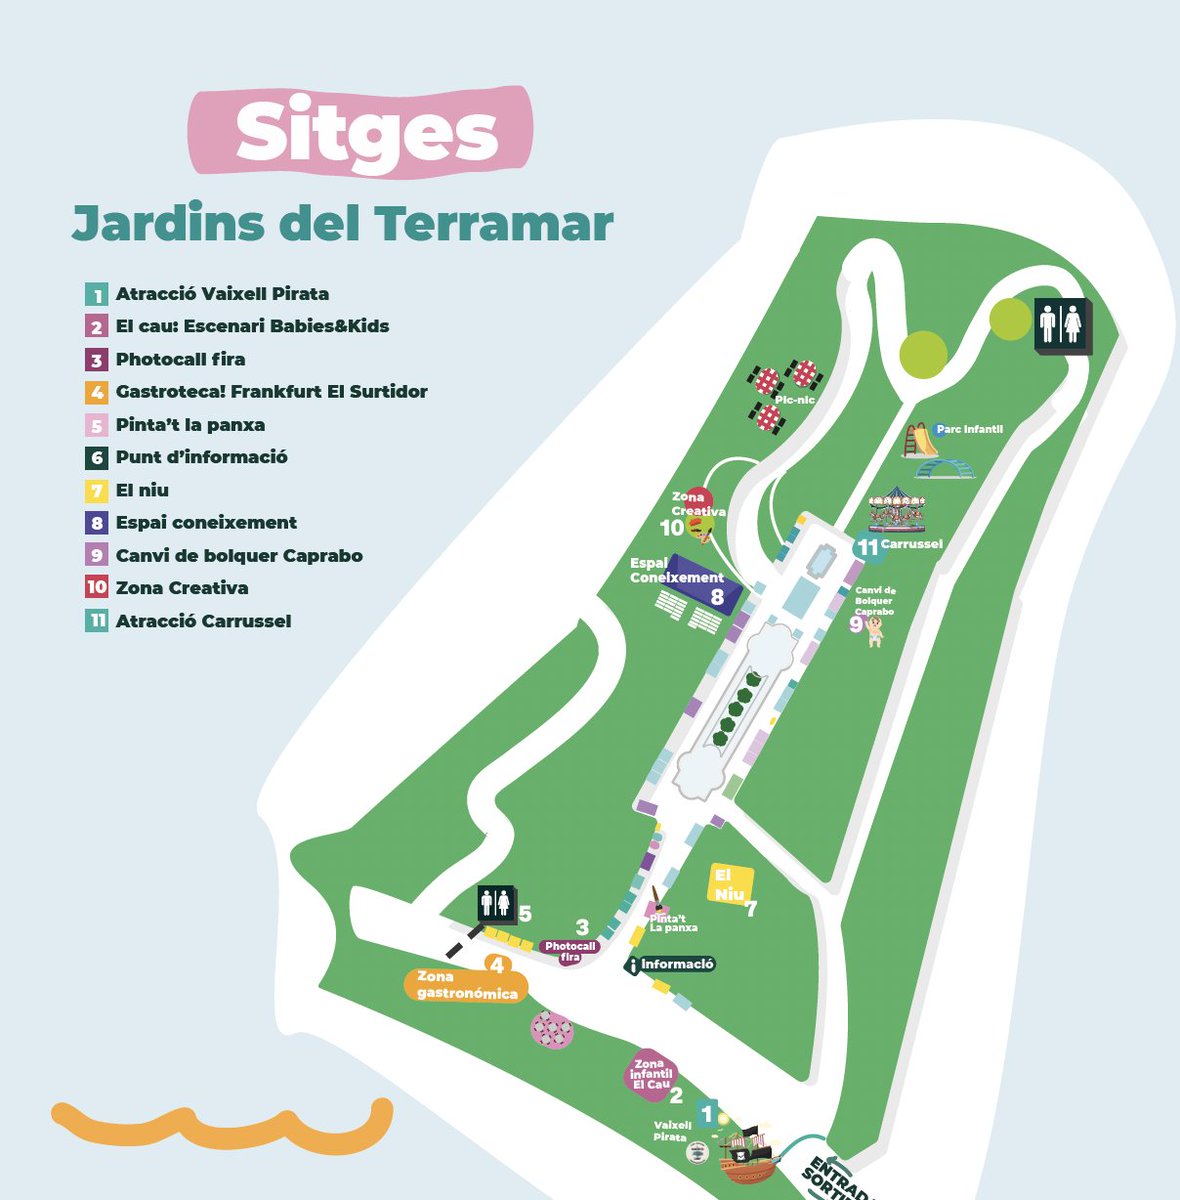 La Fira ExpoNadó @feriadebebes torna al #Garraf.  La fem a #Sitges , als Jardins Terramar, aquest cap de setmana .
@caprabo
@AjSitges
@TurismeDeSitges
@CriarSComun
@TothosapGarraf
#sitges #sitgesanytime #turismefamiliar #gratis